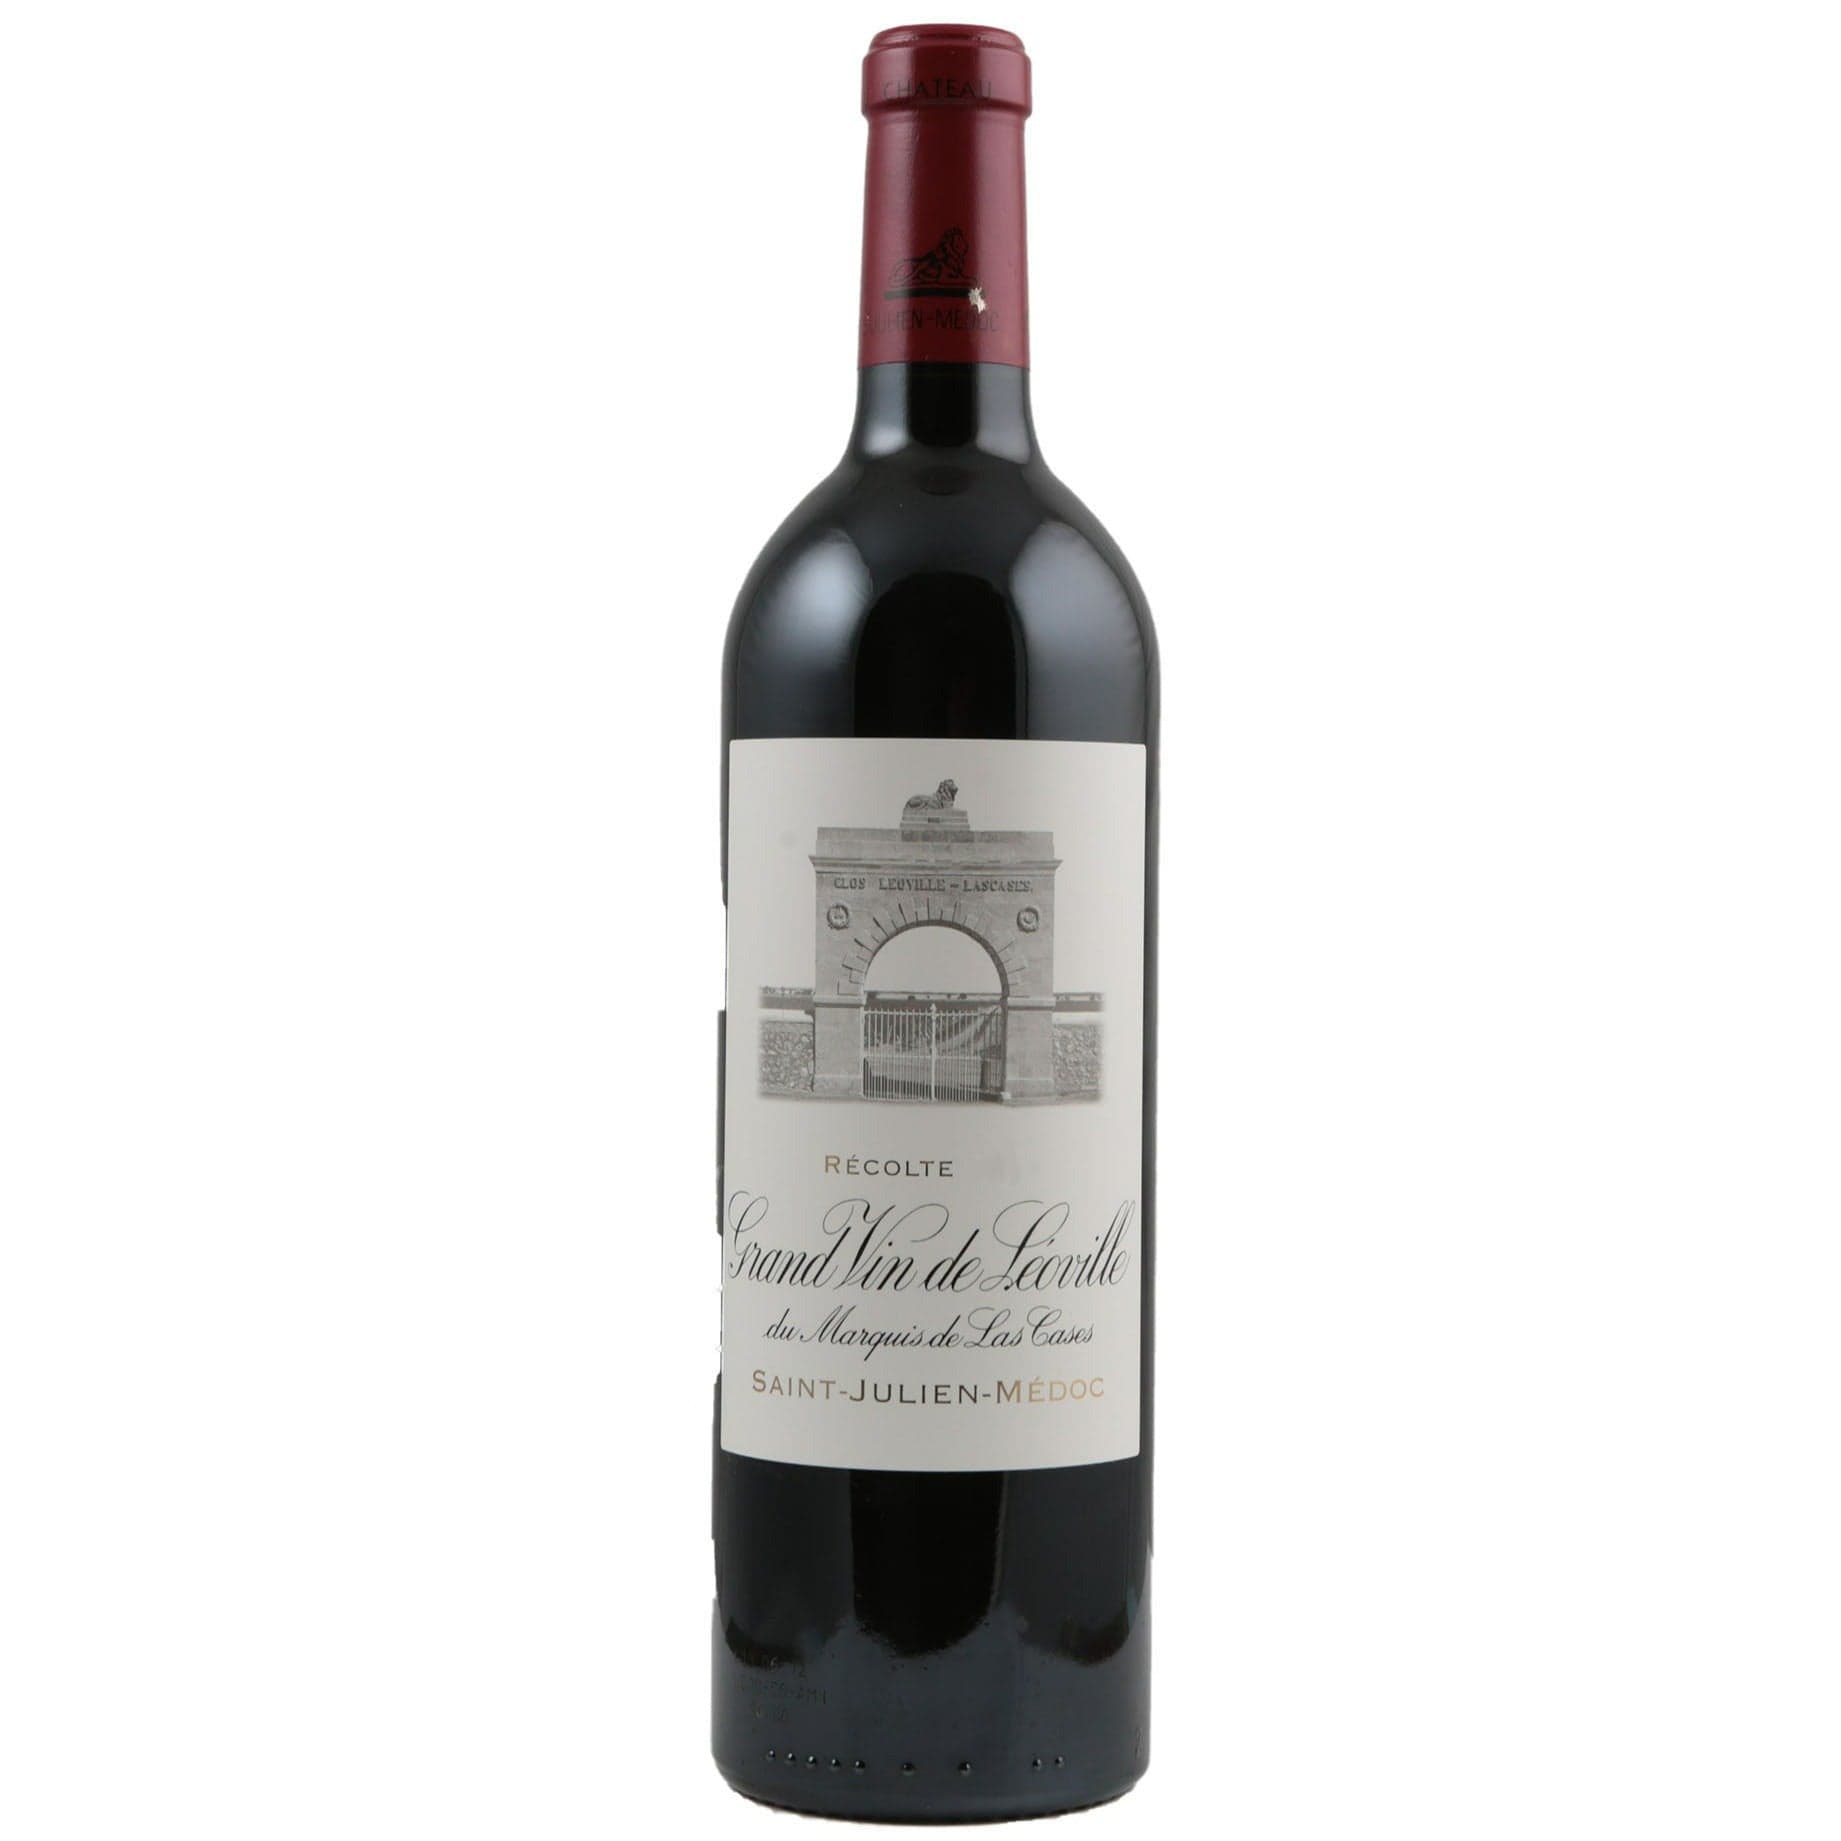 Single bottle of Red wine Ch. Leoville-Las Cases, 2nd Growth Grand Cru Classe, Saint-Julien, 2009 76% Cabernet Sauvignon, 15% Merlot & 9% Cabernet Franc